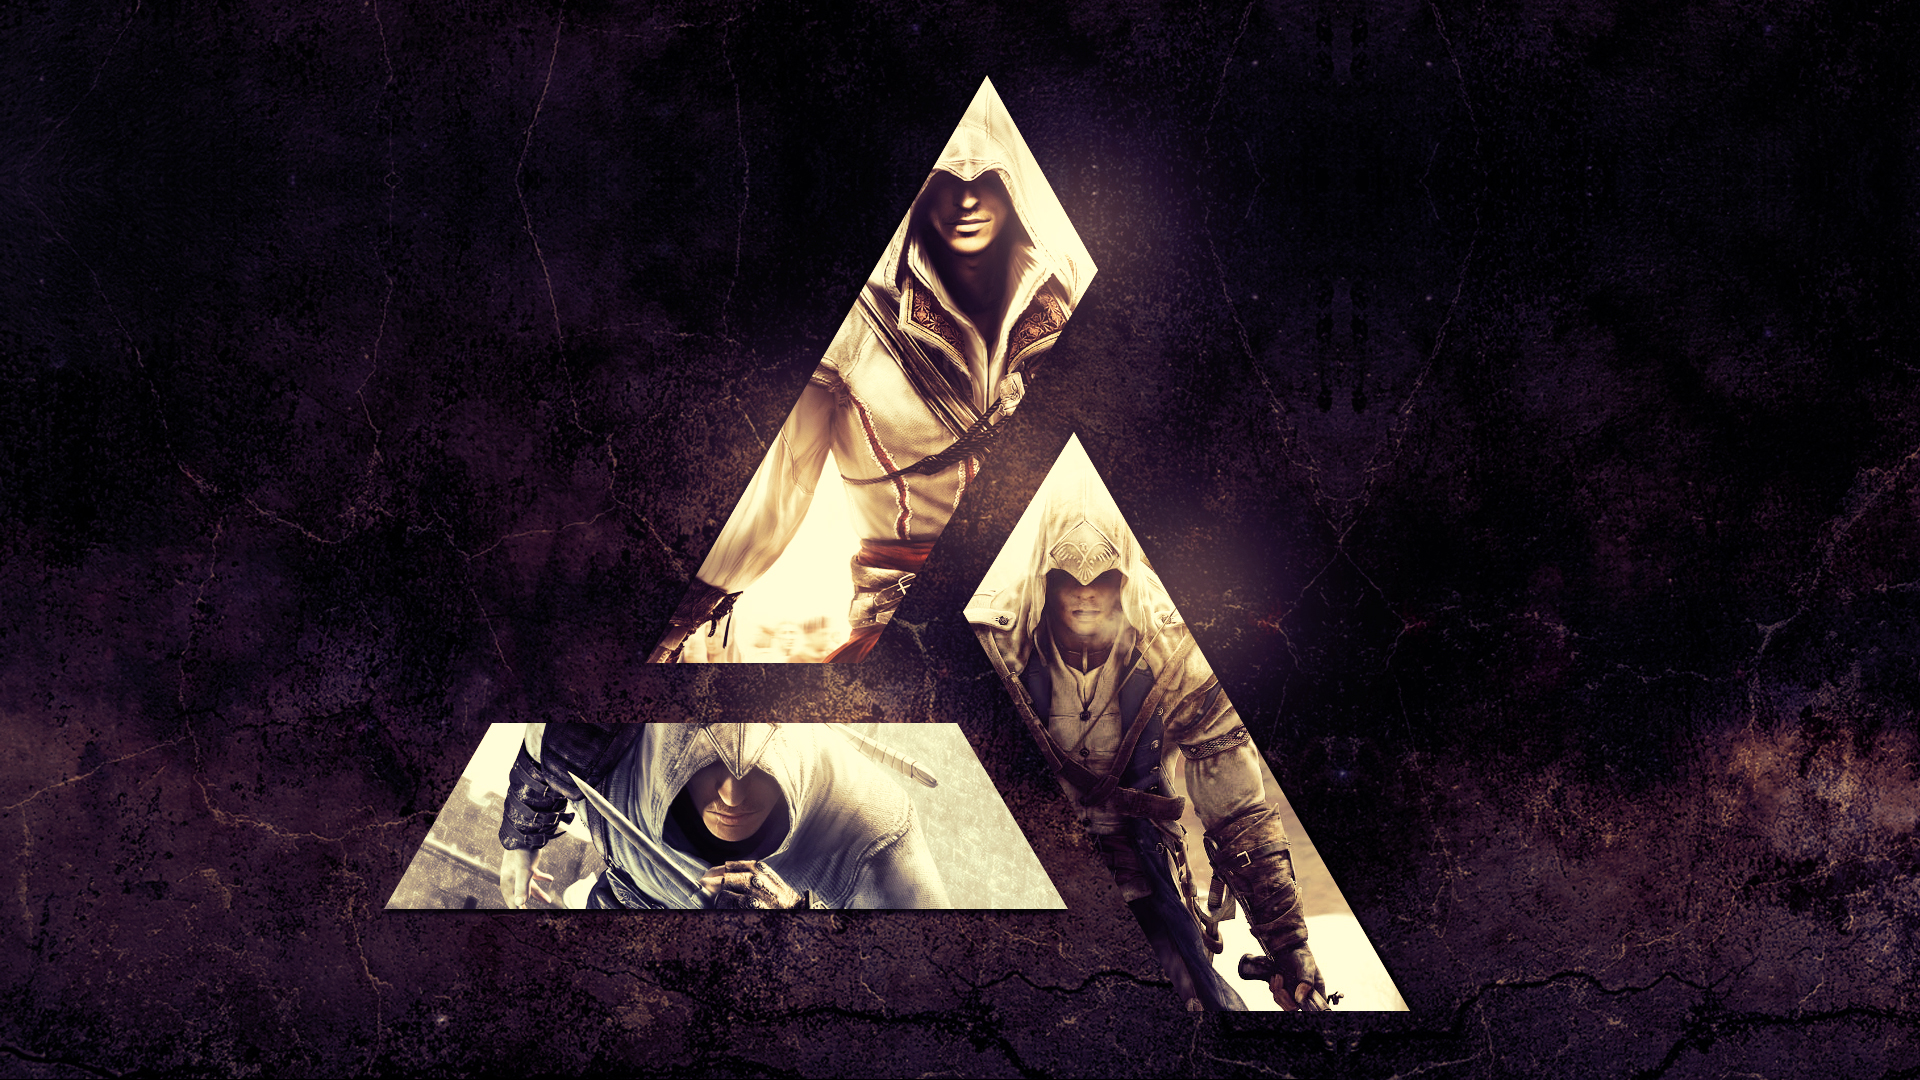 Ezio Auditore da Firenze, Altaïr Ibn La&039;Ahad, Assassin&039;s Creed, Video games, Connor, Assassin&039;s Creed 2 Wallpaper